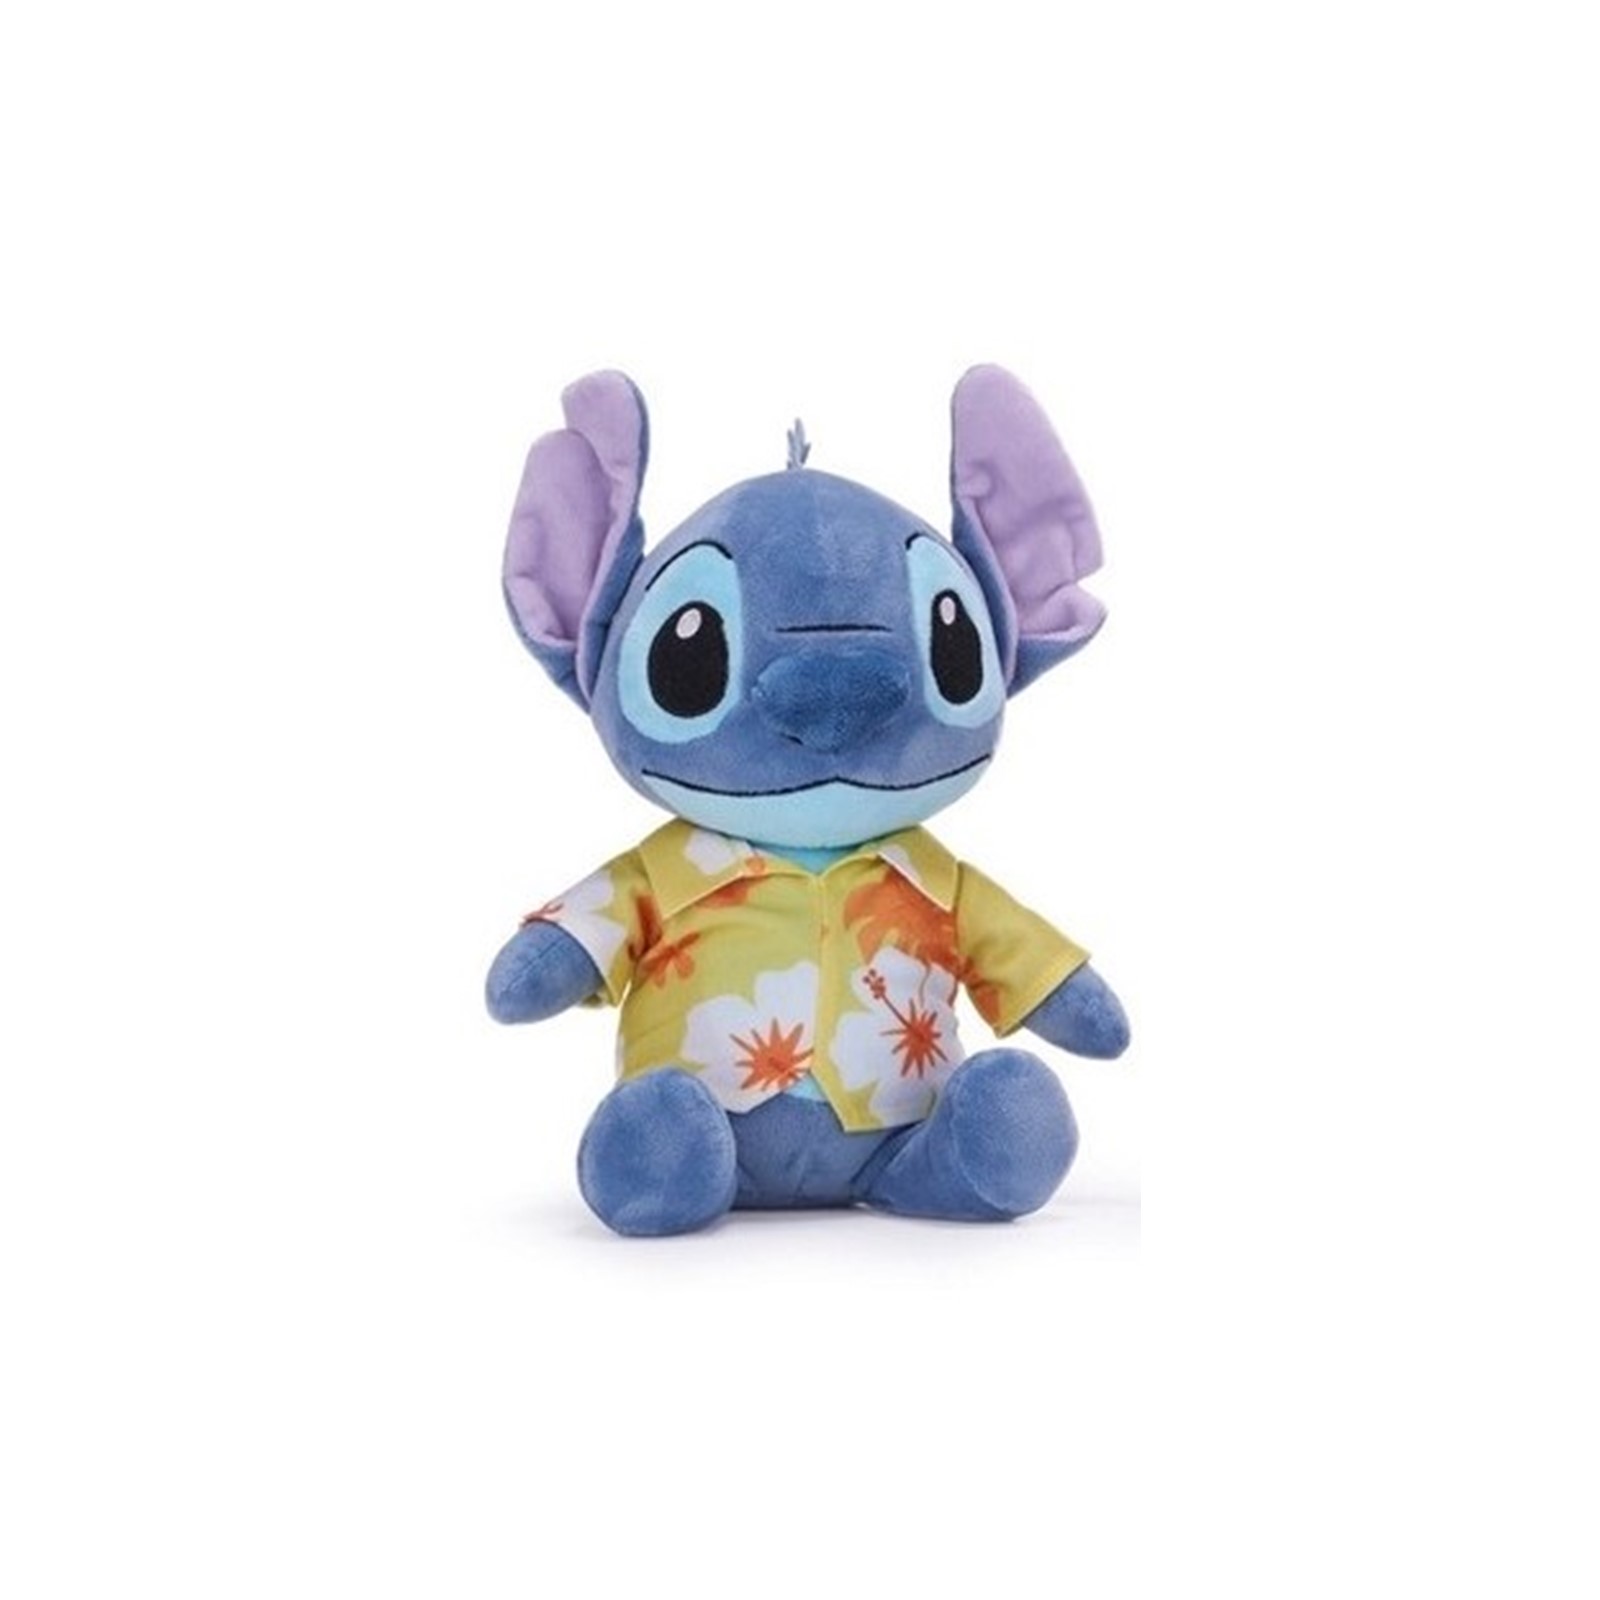 Lilo&Stitch - Peluche Stitch Bleu Avec Son et Chemise Hawaïenne - 33cm -  Qualité Super Soft